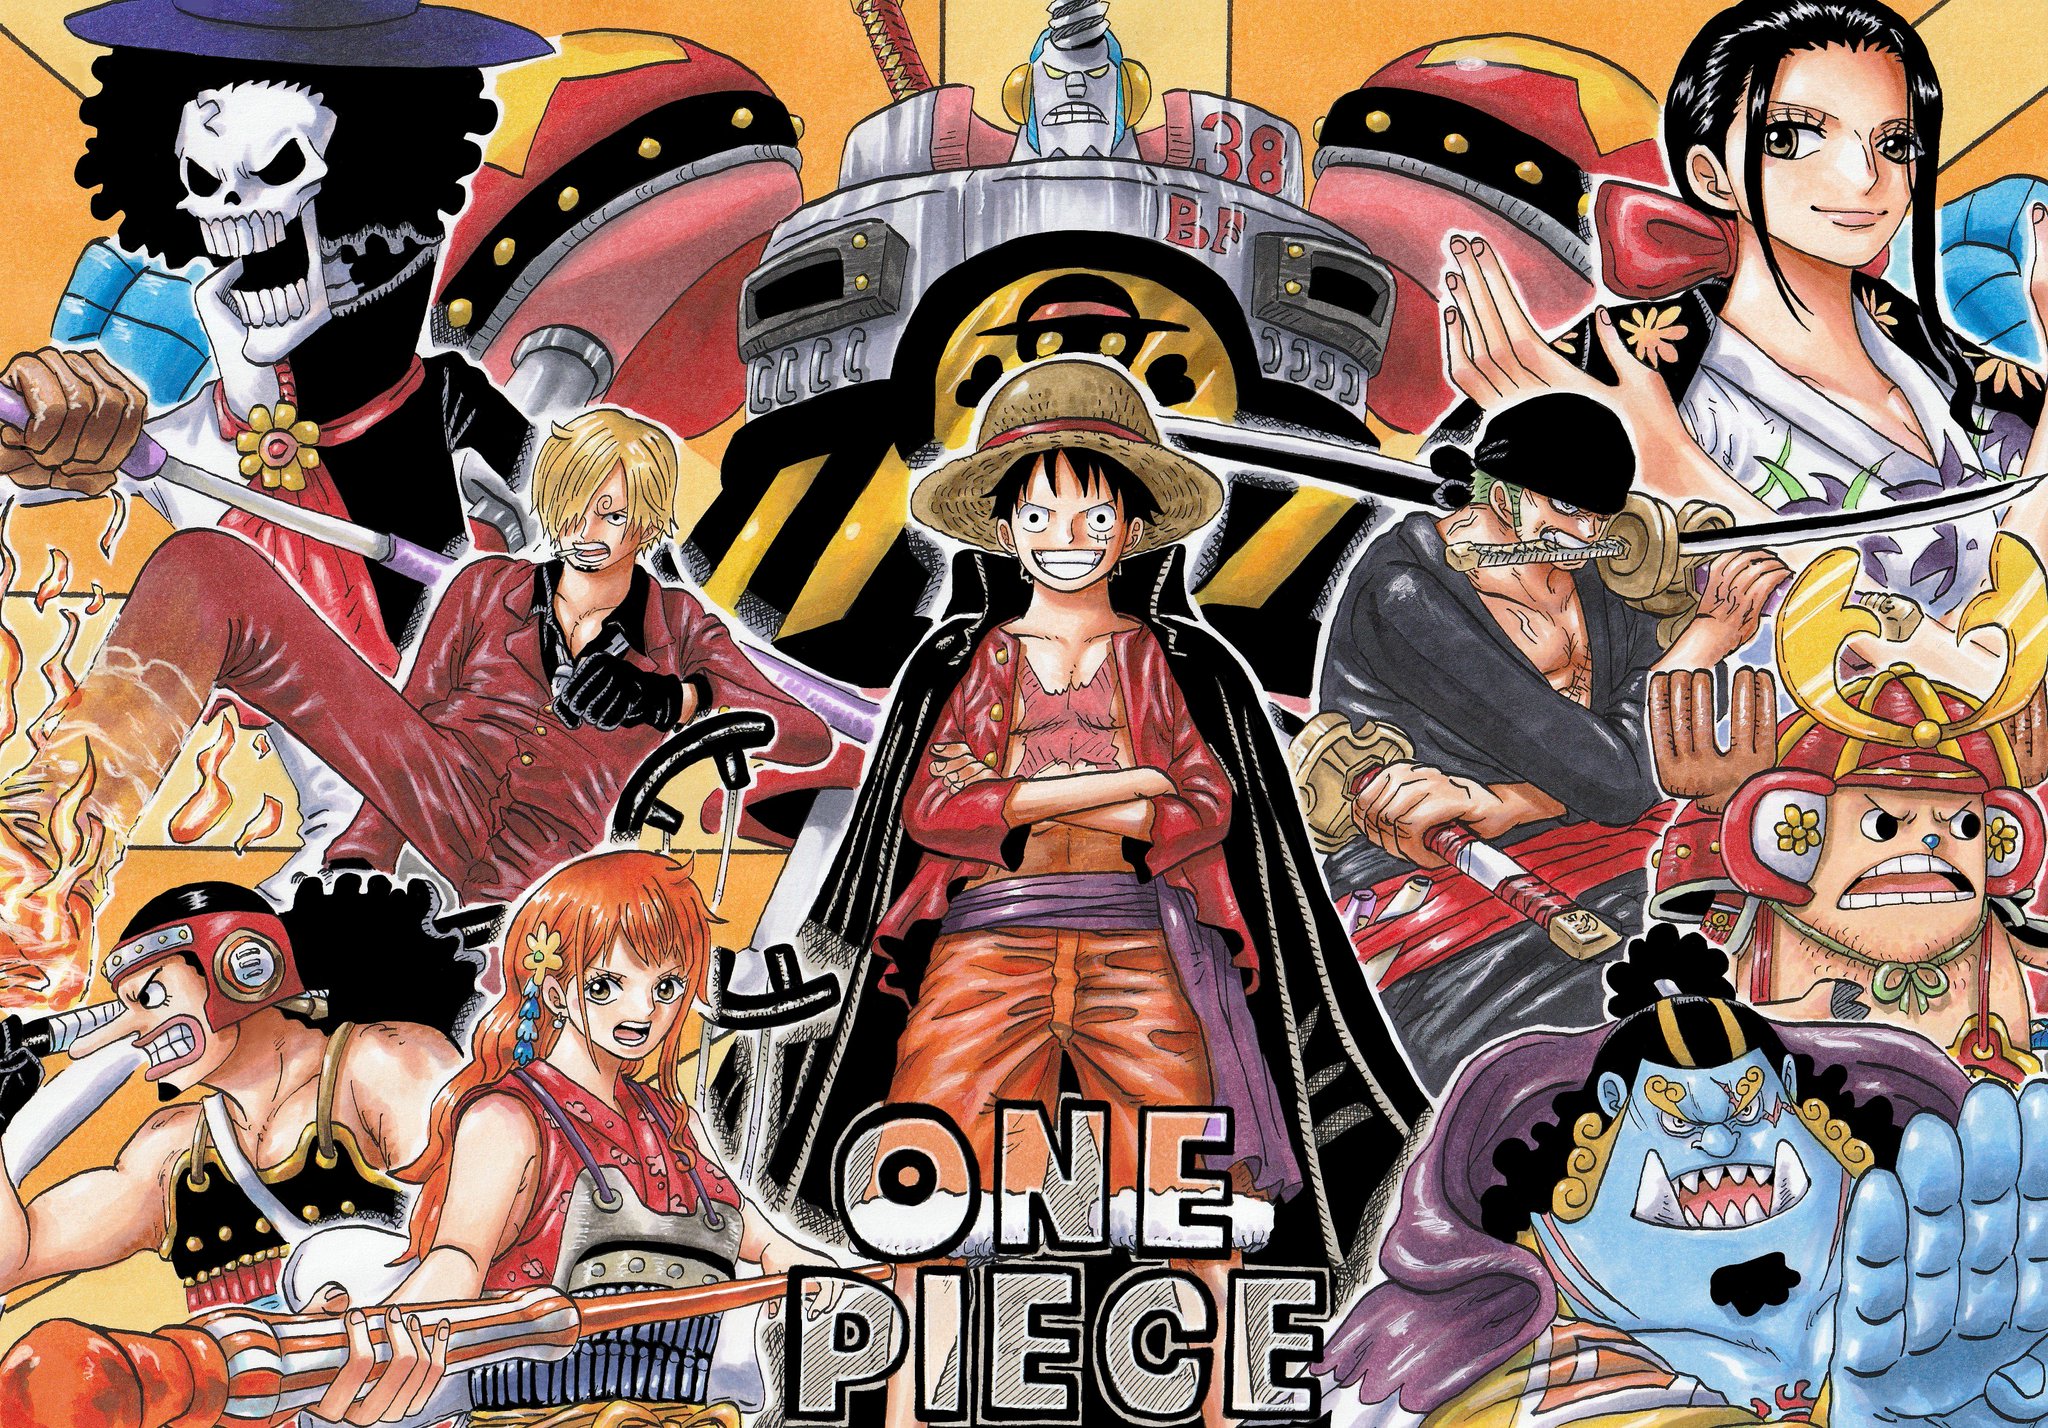 Baixe gratuitamente a imagem Anime, One Piece, Tony Tony Chopper, Usopp (One Piece), Roronoa Zoro, Monkey D Luffy, Nami (One Piece), Sanji (One Piece), Brook (One Piece), Nico Robin, Franky (One Piece), Jinbe (One Piece) na área de trabalho do seu PC